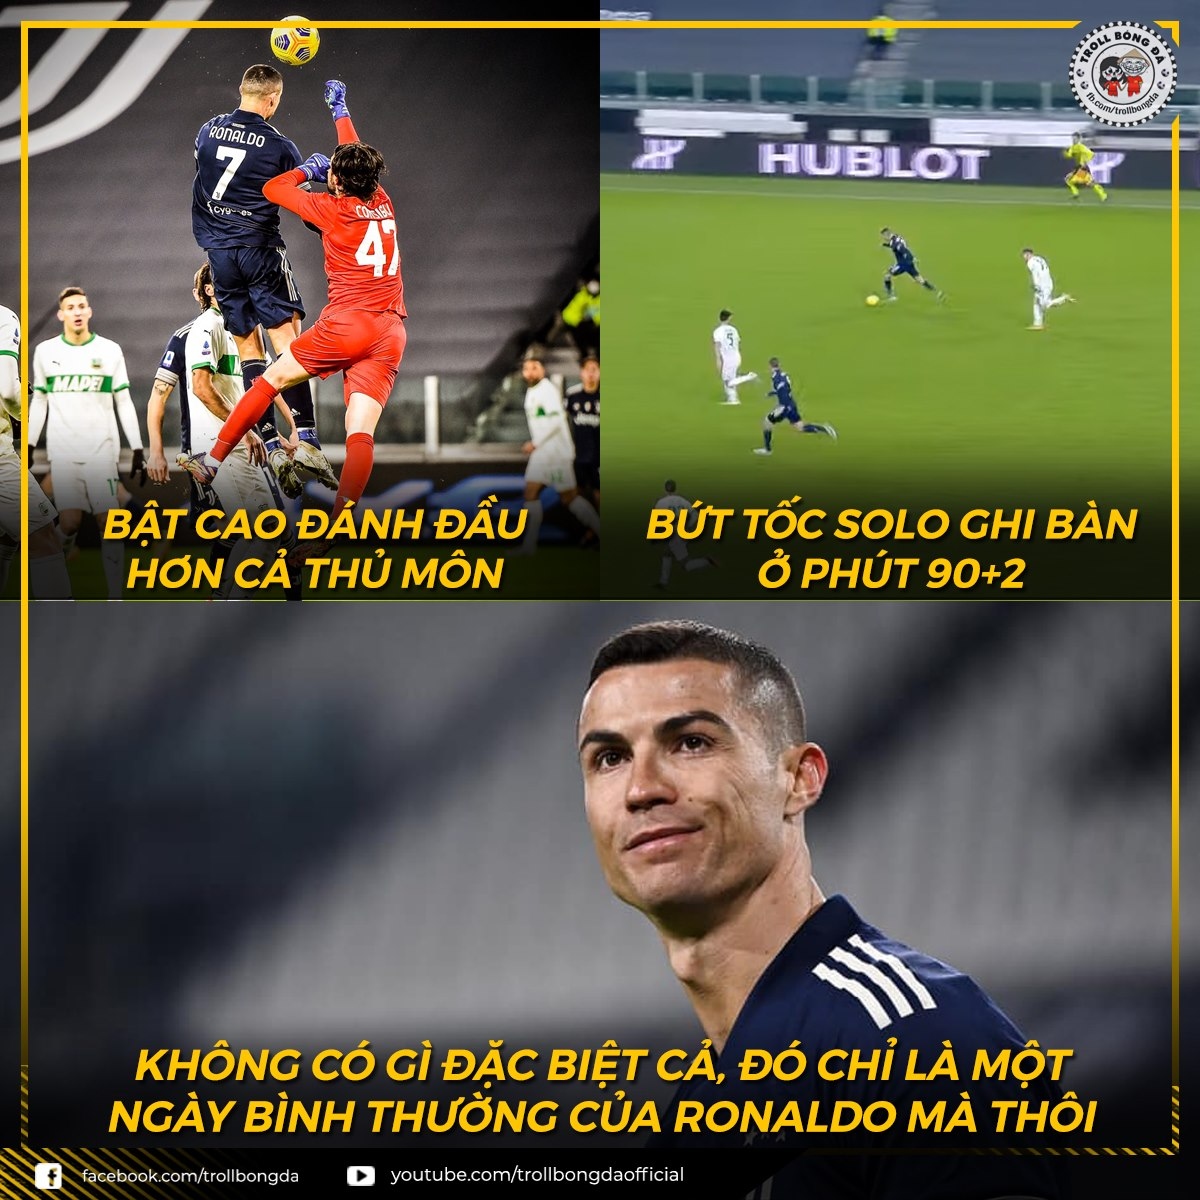 Biếm họa 24h: Không ai cản nổi Ronaldo | VOV.VN